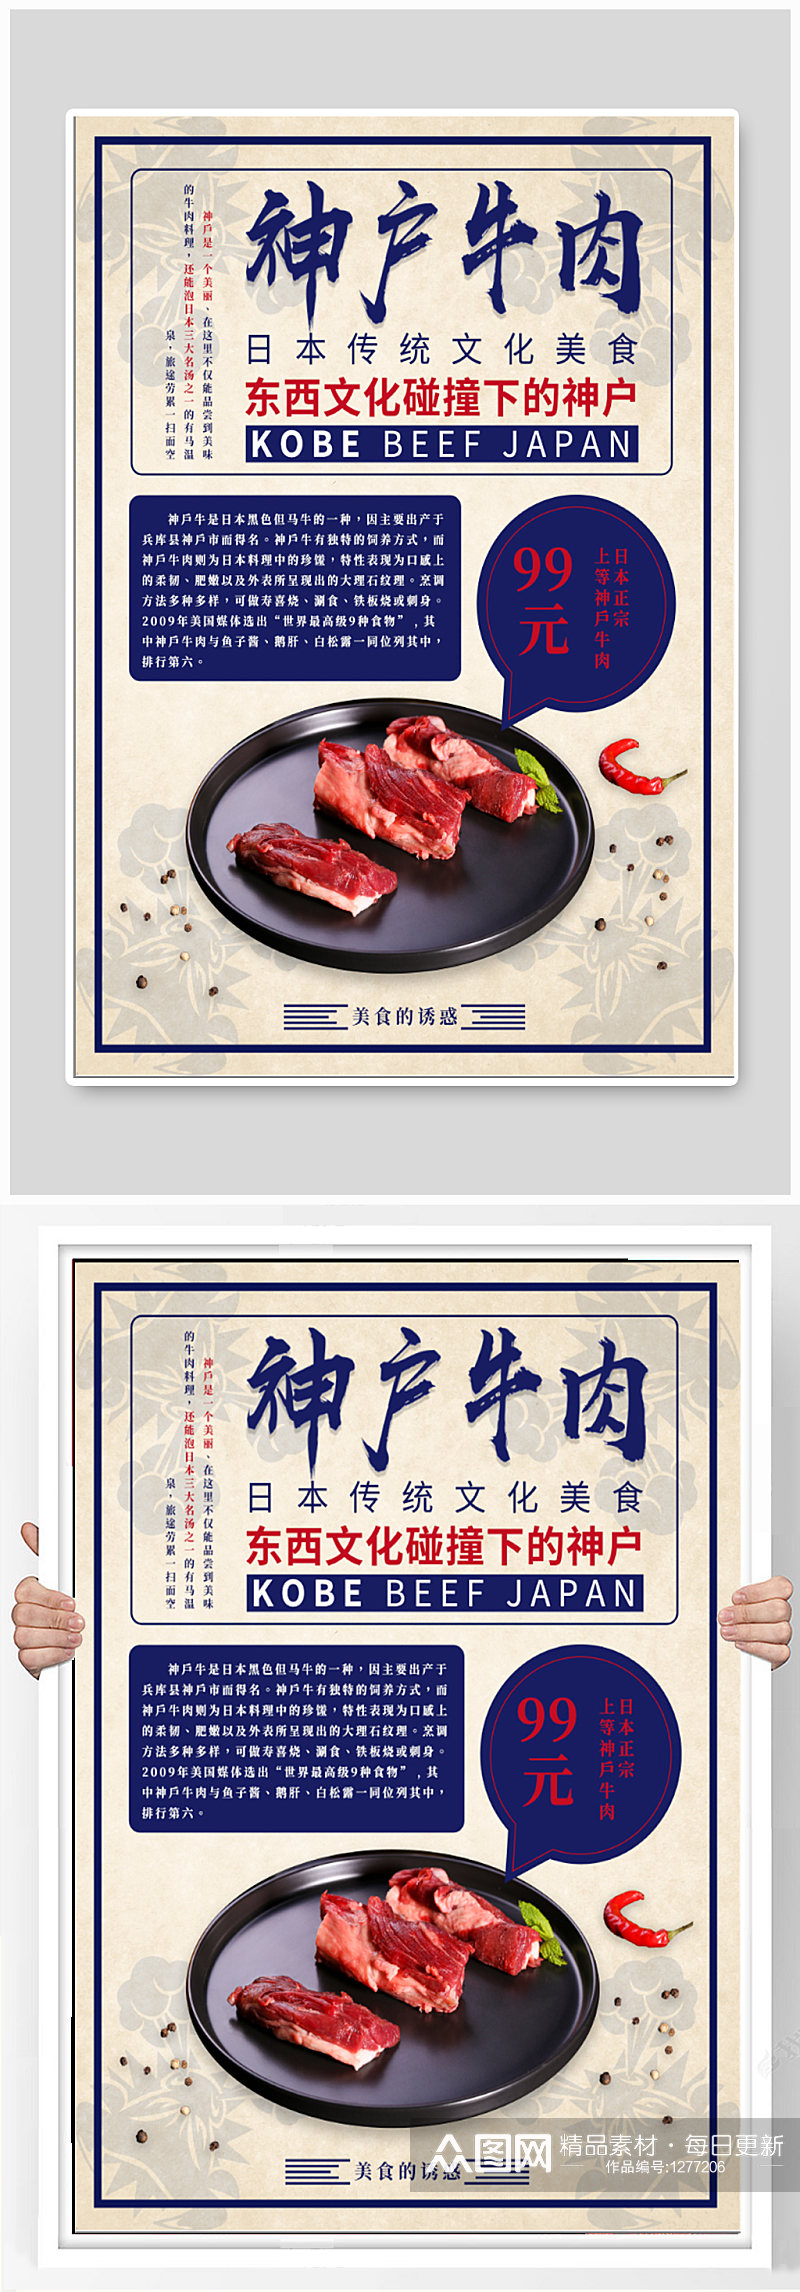 神户牛肉日料海报素材